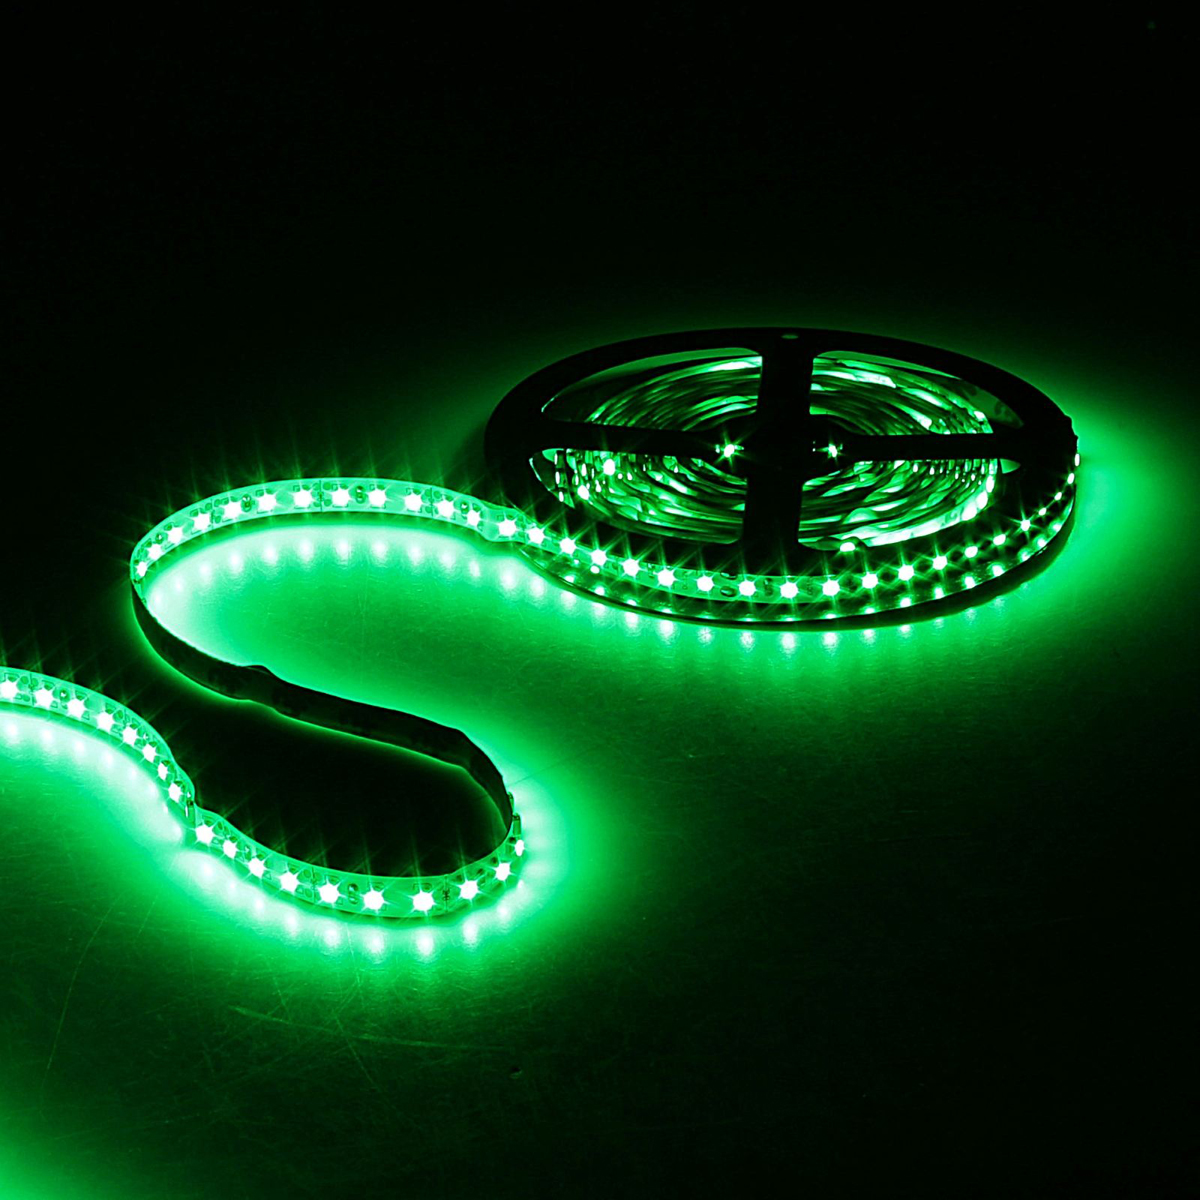 Светодиодная лента Sima-land, 12В, SMD3528, длина 5 м, IP33, 120 LED ламп, 9.6 Вт/м, 6-7 Лм/1 LED, DC, цвет: зеленый. 848539